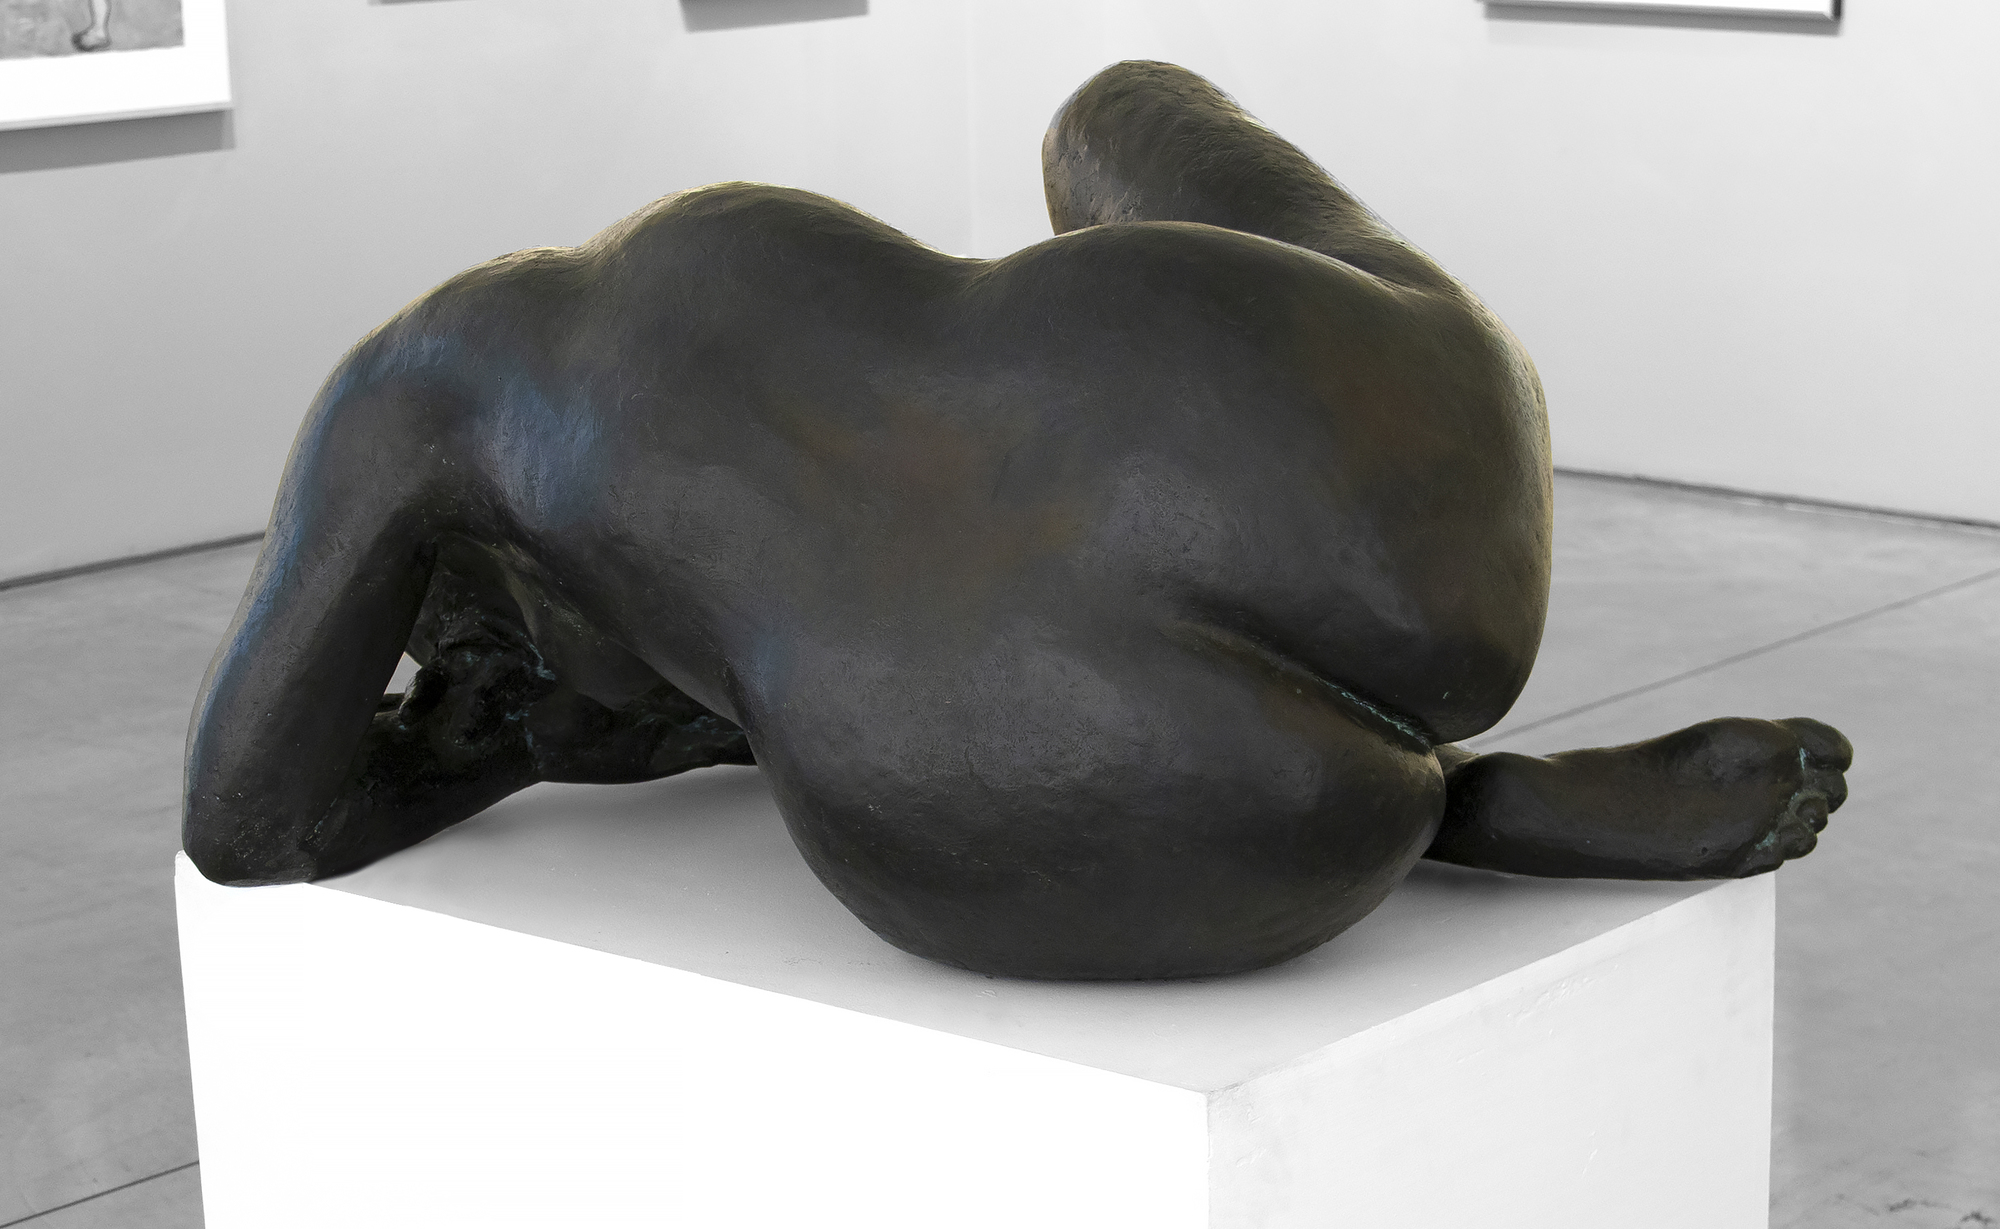 FRANCISCO ZUNIGA - Desnudo reclinado de Dolores - bronze with green patina - 21 x 43 1/4 x 21 1/2 in.